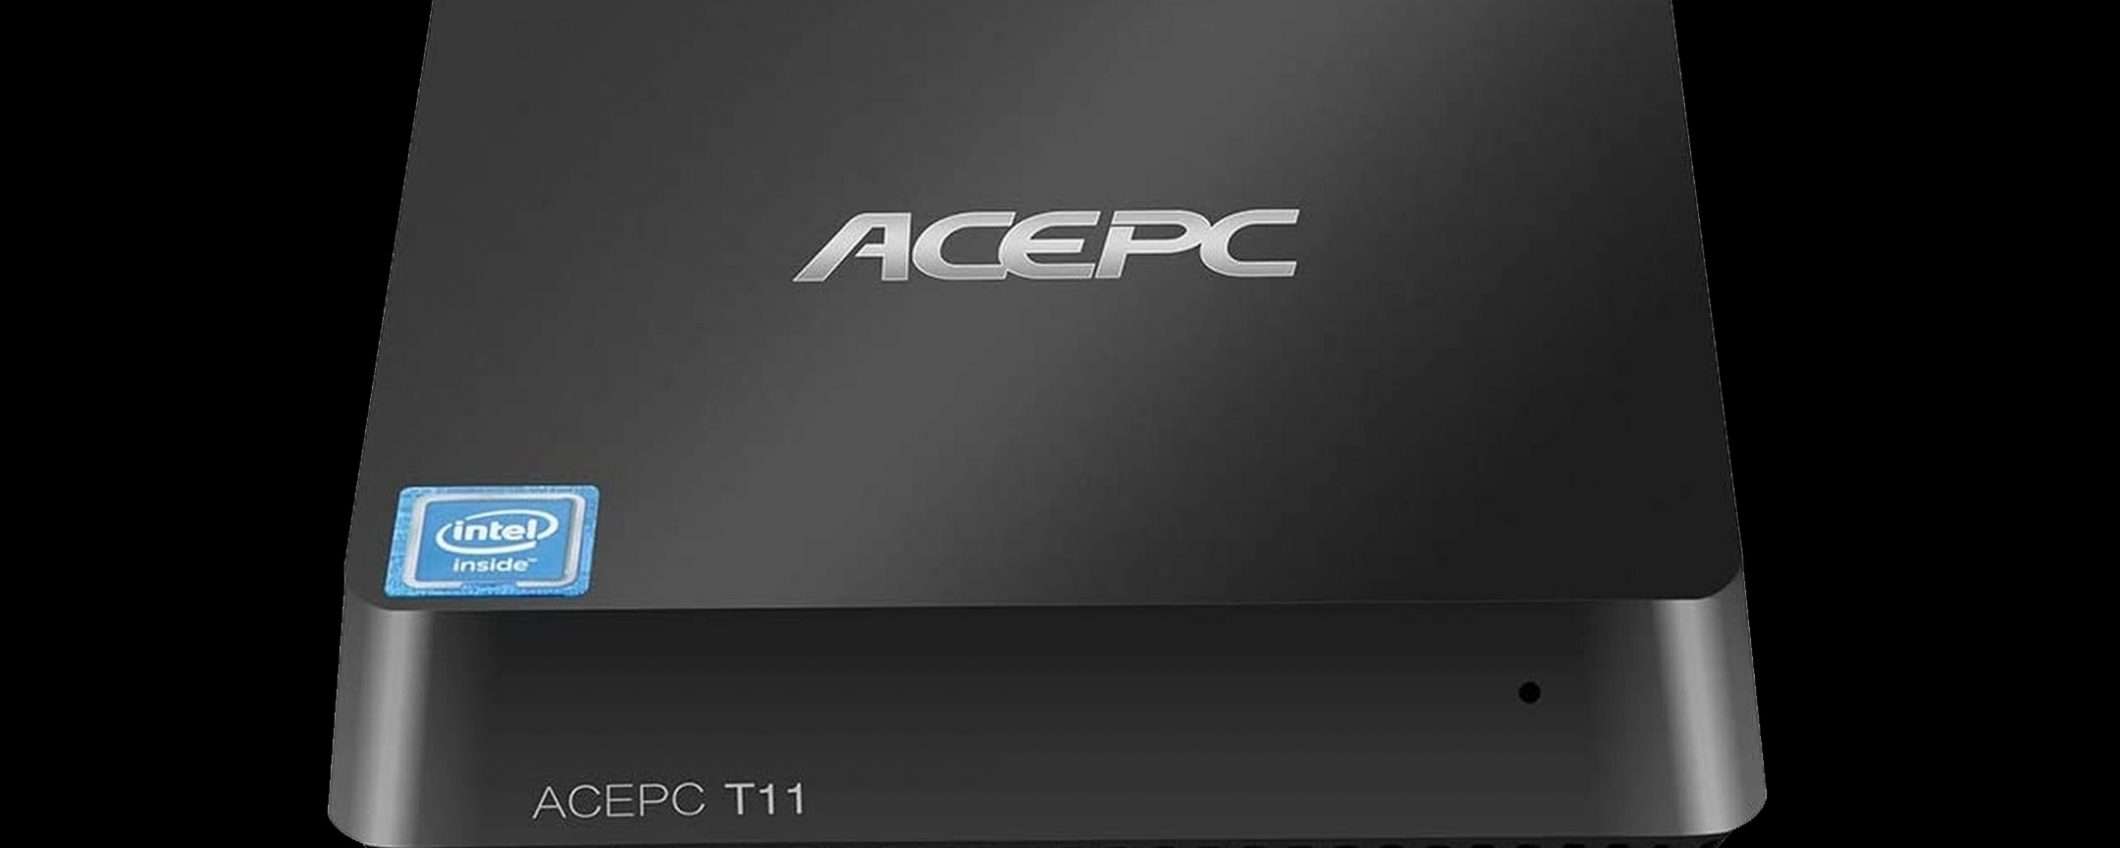 ACEPC T11, mini PC in offerta lampo a 119 euro